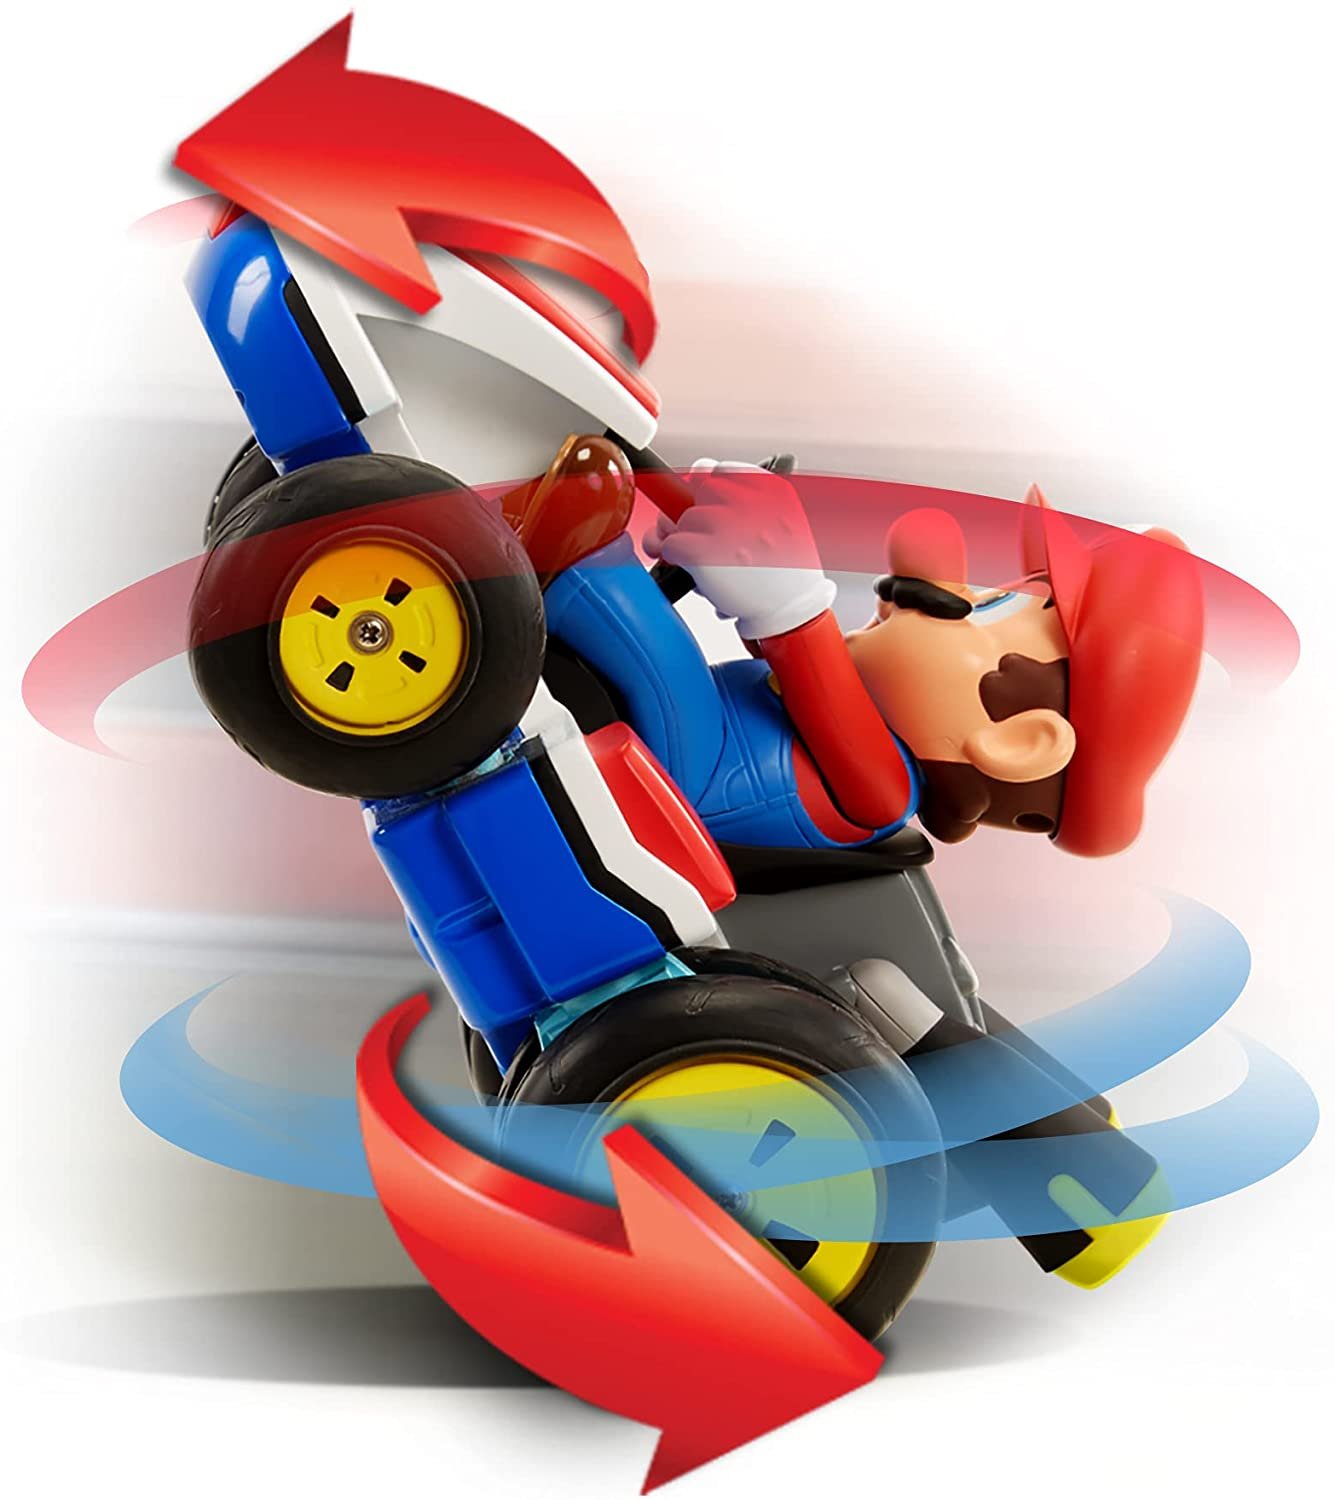 Carro Mario Kart de Controle Remoto Antigravidade Candide - Fátima Criança